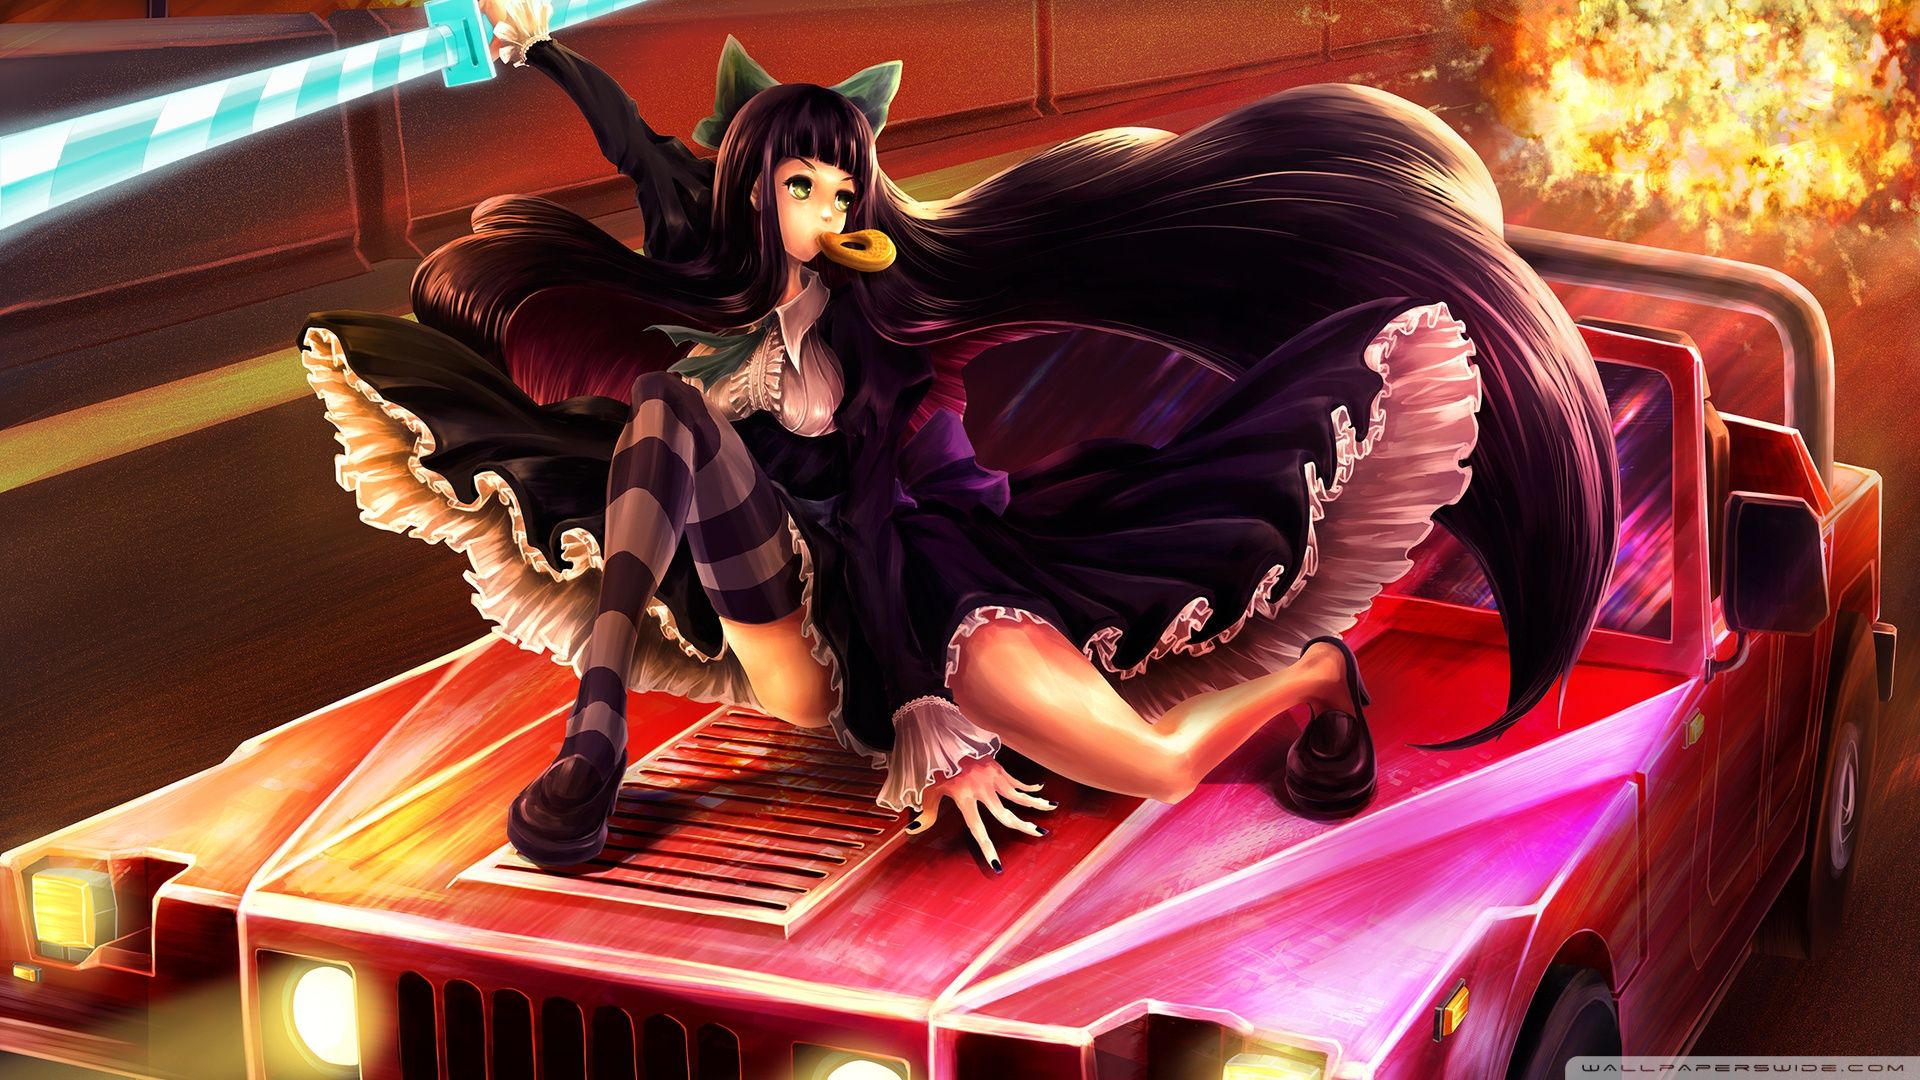 Anime Car Girl Ultra HD Desktop Background Wallpaper for 4K UHD TV